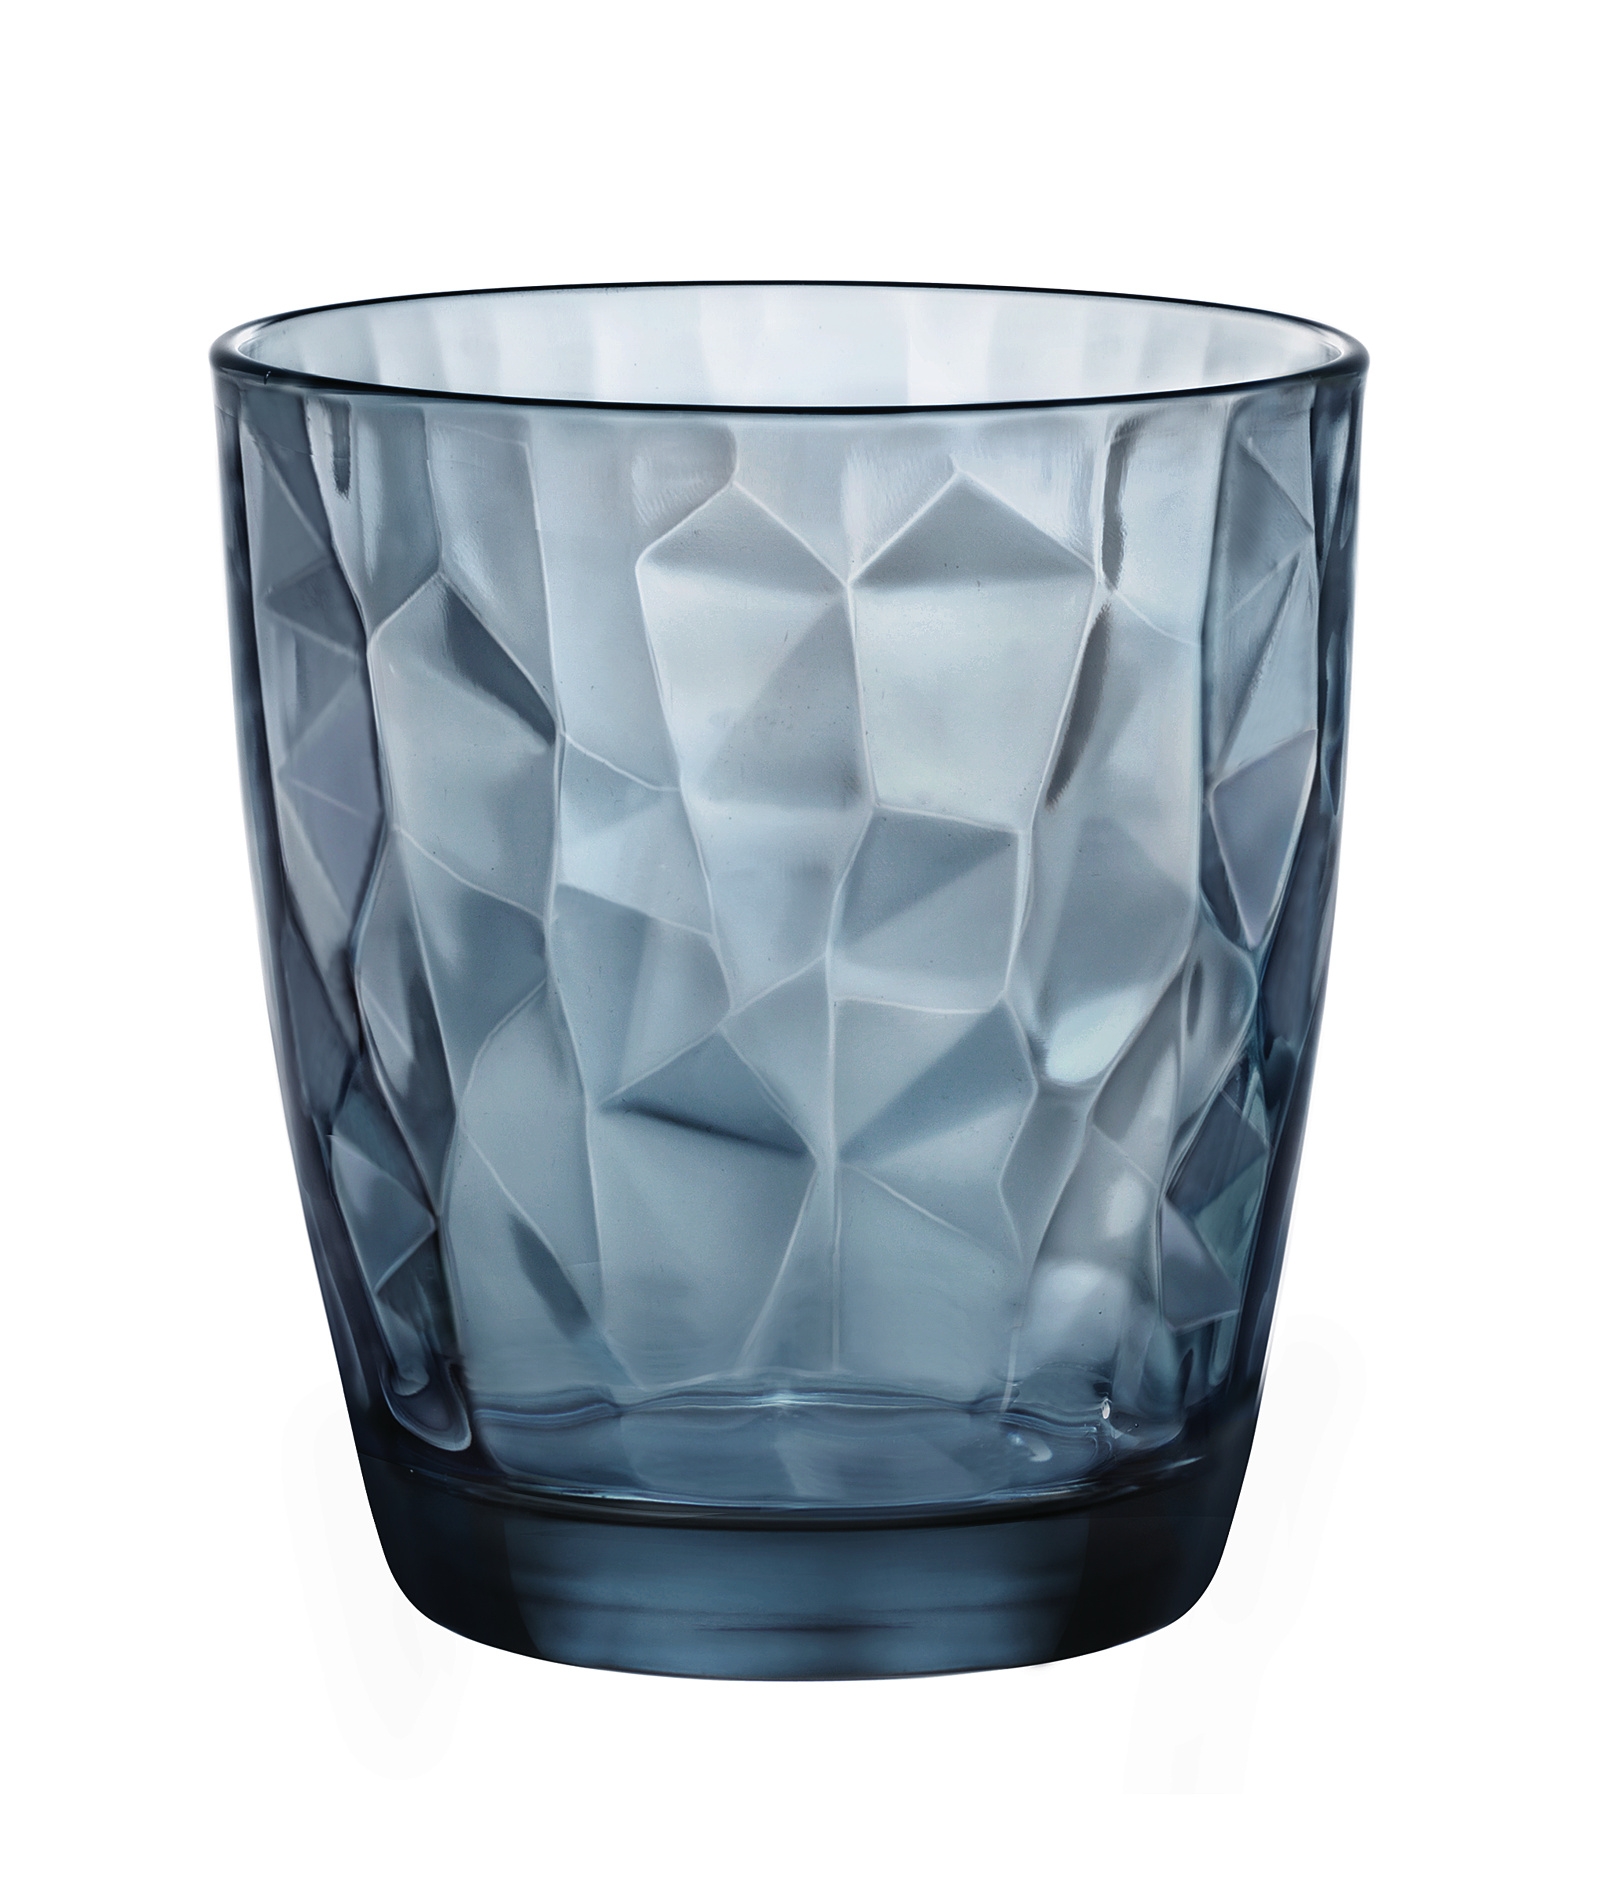 Ποτήρι Κρασιού Γυάλινο Diamond Μπλε Bormioli Rocco 300ml BR00127703 (Σετ 6 Τεμάχια) (Υλικό: Γυαλί, Χρώμα: Μπλε, Μέγεθος: Σωλήνας) - Bormioli Rocco - BR00127703